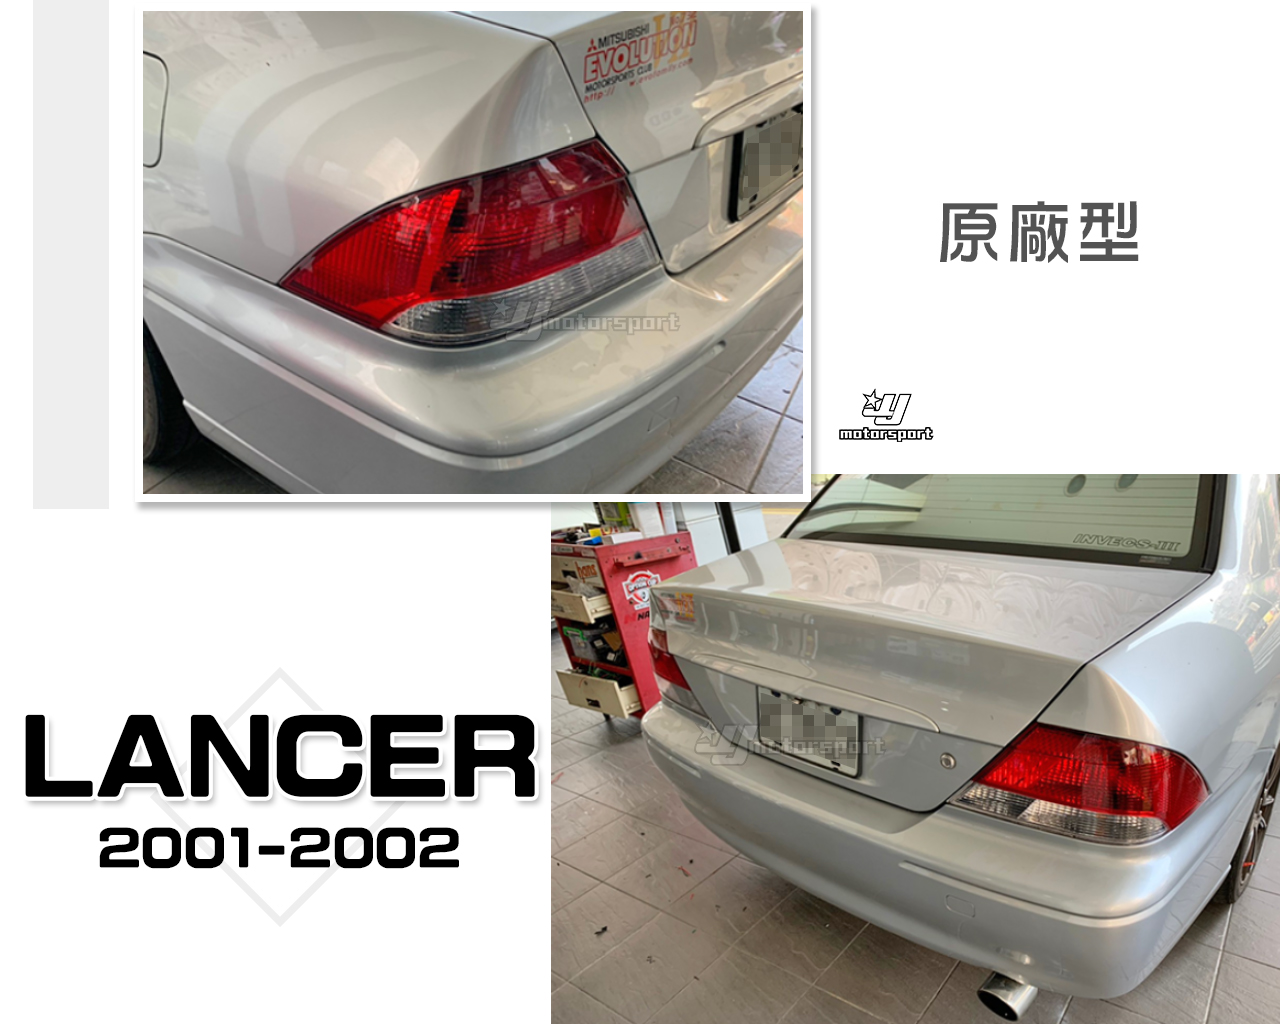 小傑車燈精品-全新 三菱 LANCER VIRAGE 2001 2002 01 02 年 原廠型 後燈 尾燈 一顆750